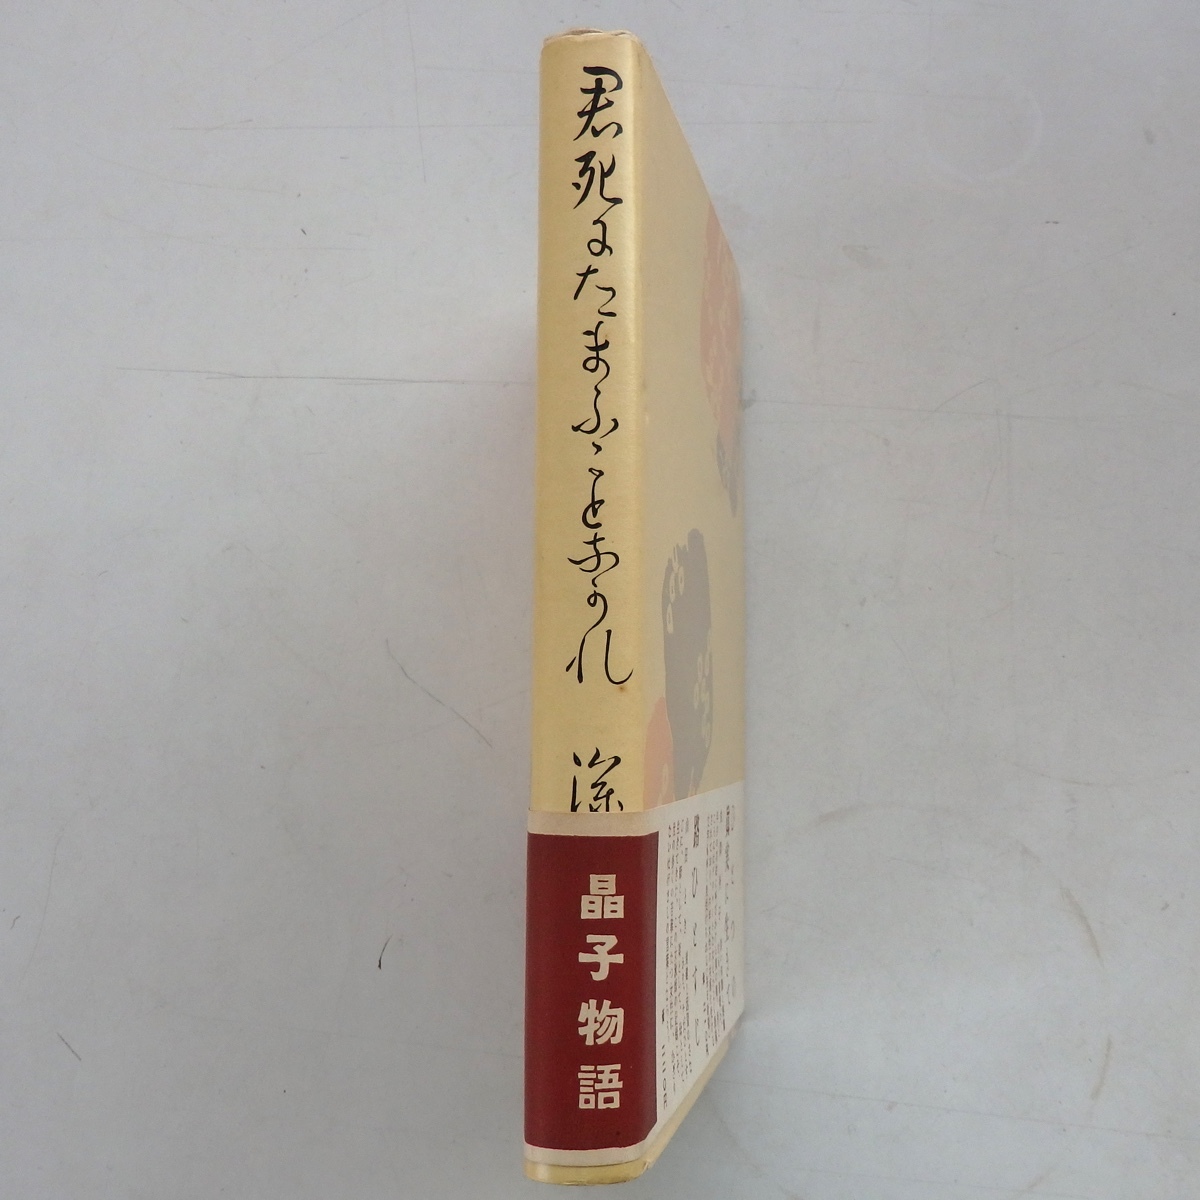 君死にたまふことなかれ 深尾須磨子 東洋書館 1952年 初版 帯付_画像2